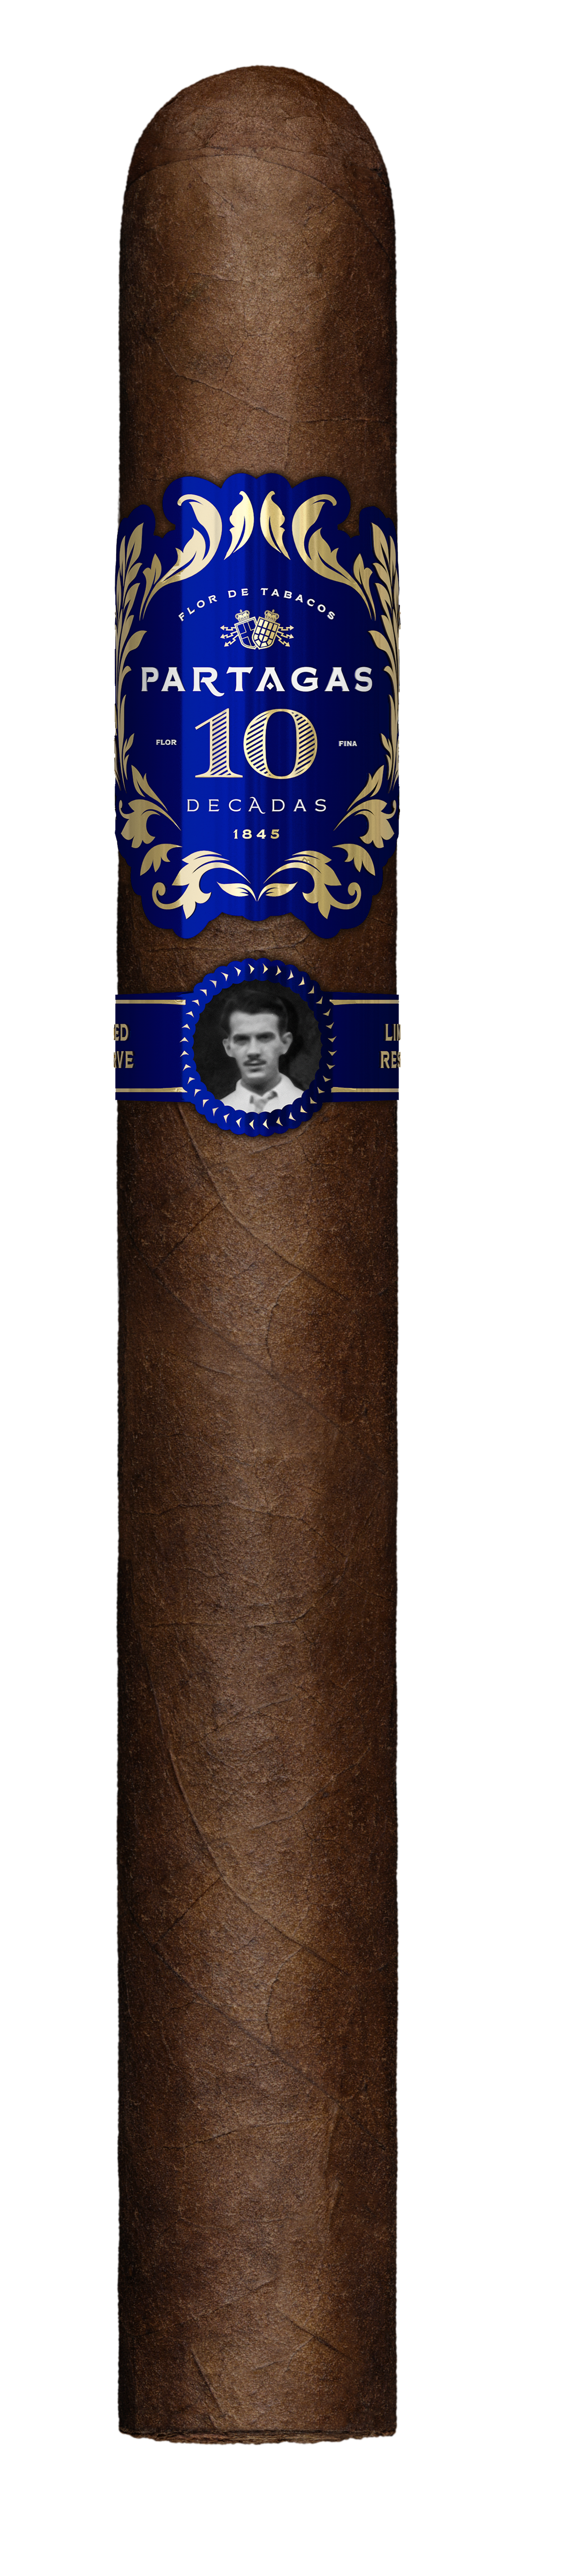 Partagas Decadas 2021 Cigar